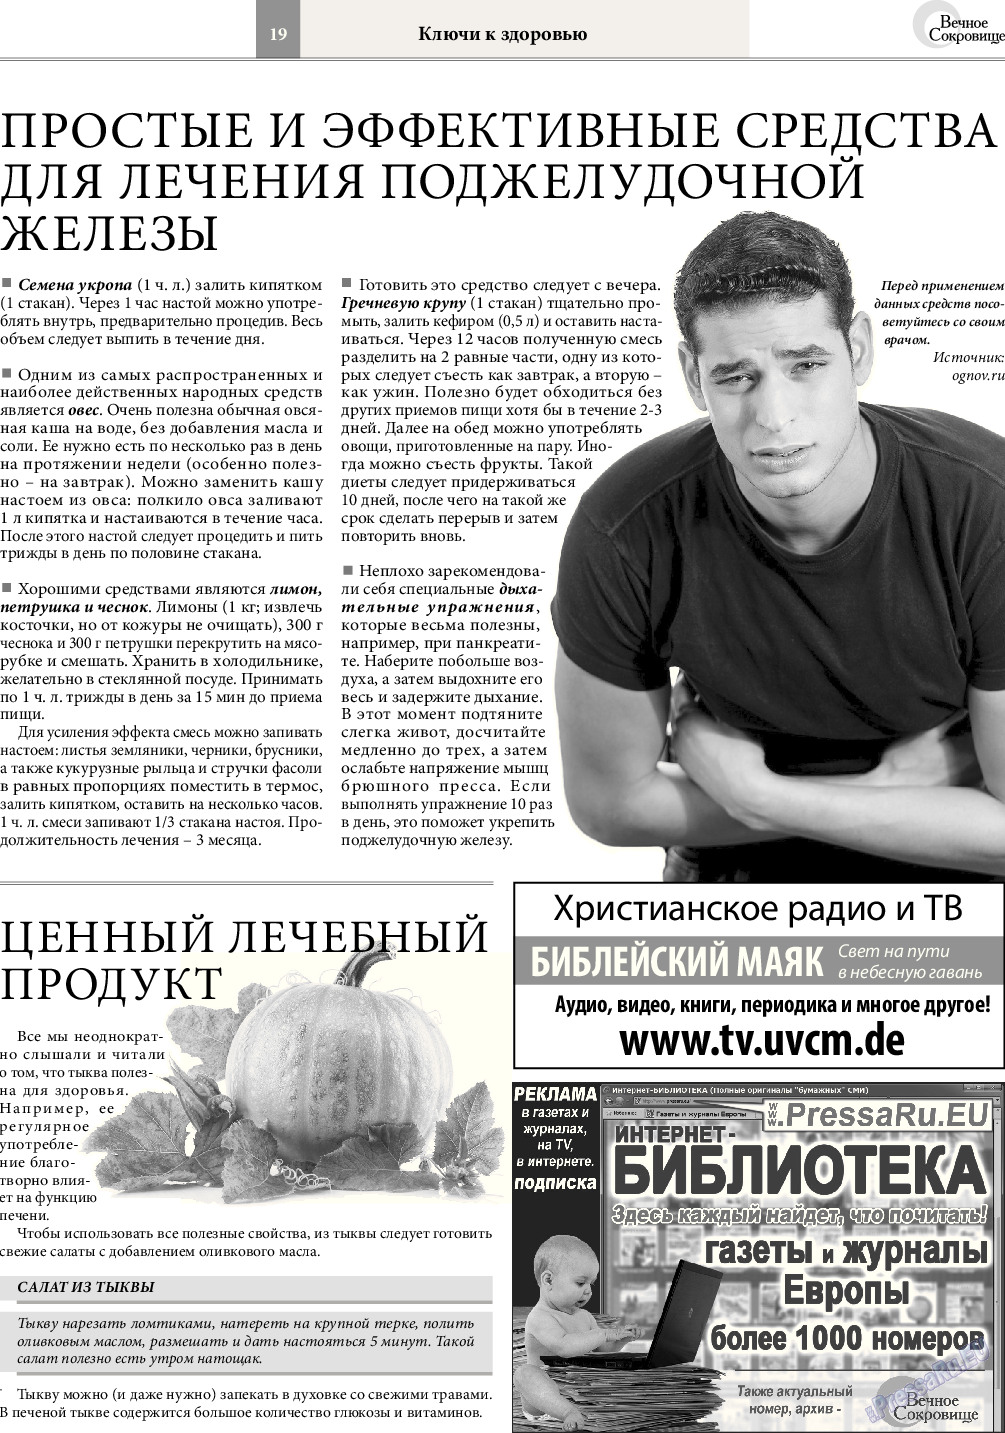 Вечное сокровище, газета. 2016 №5 стр.19